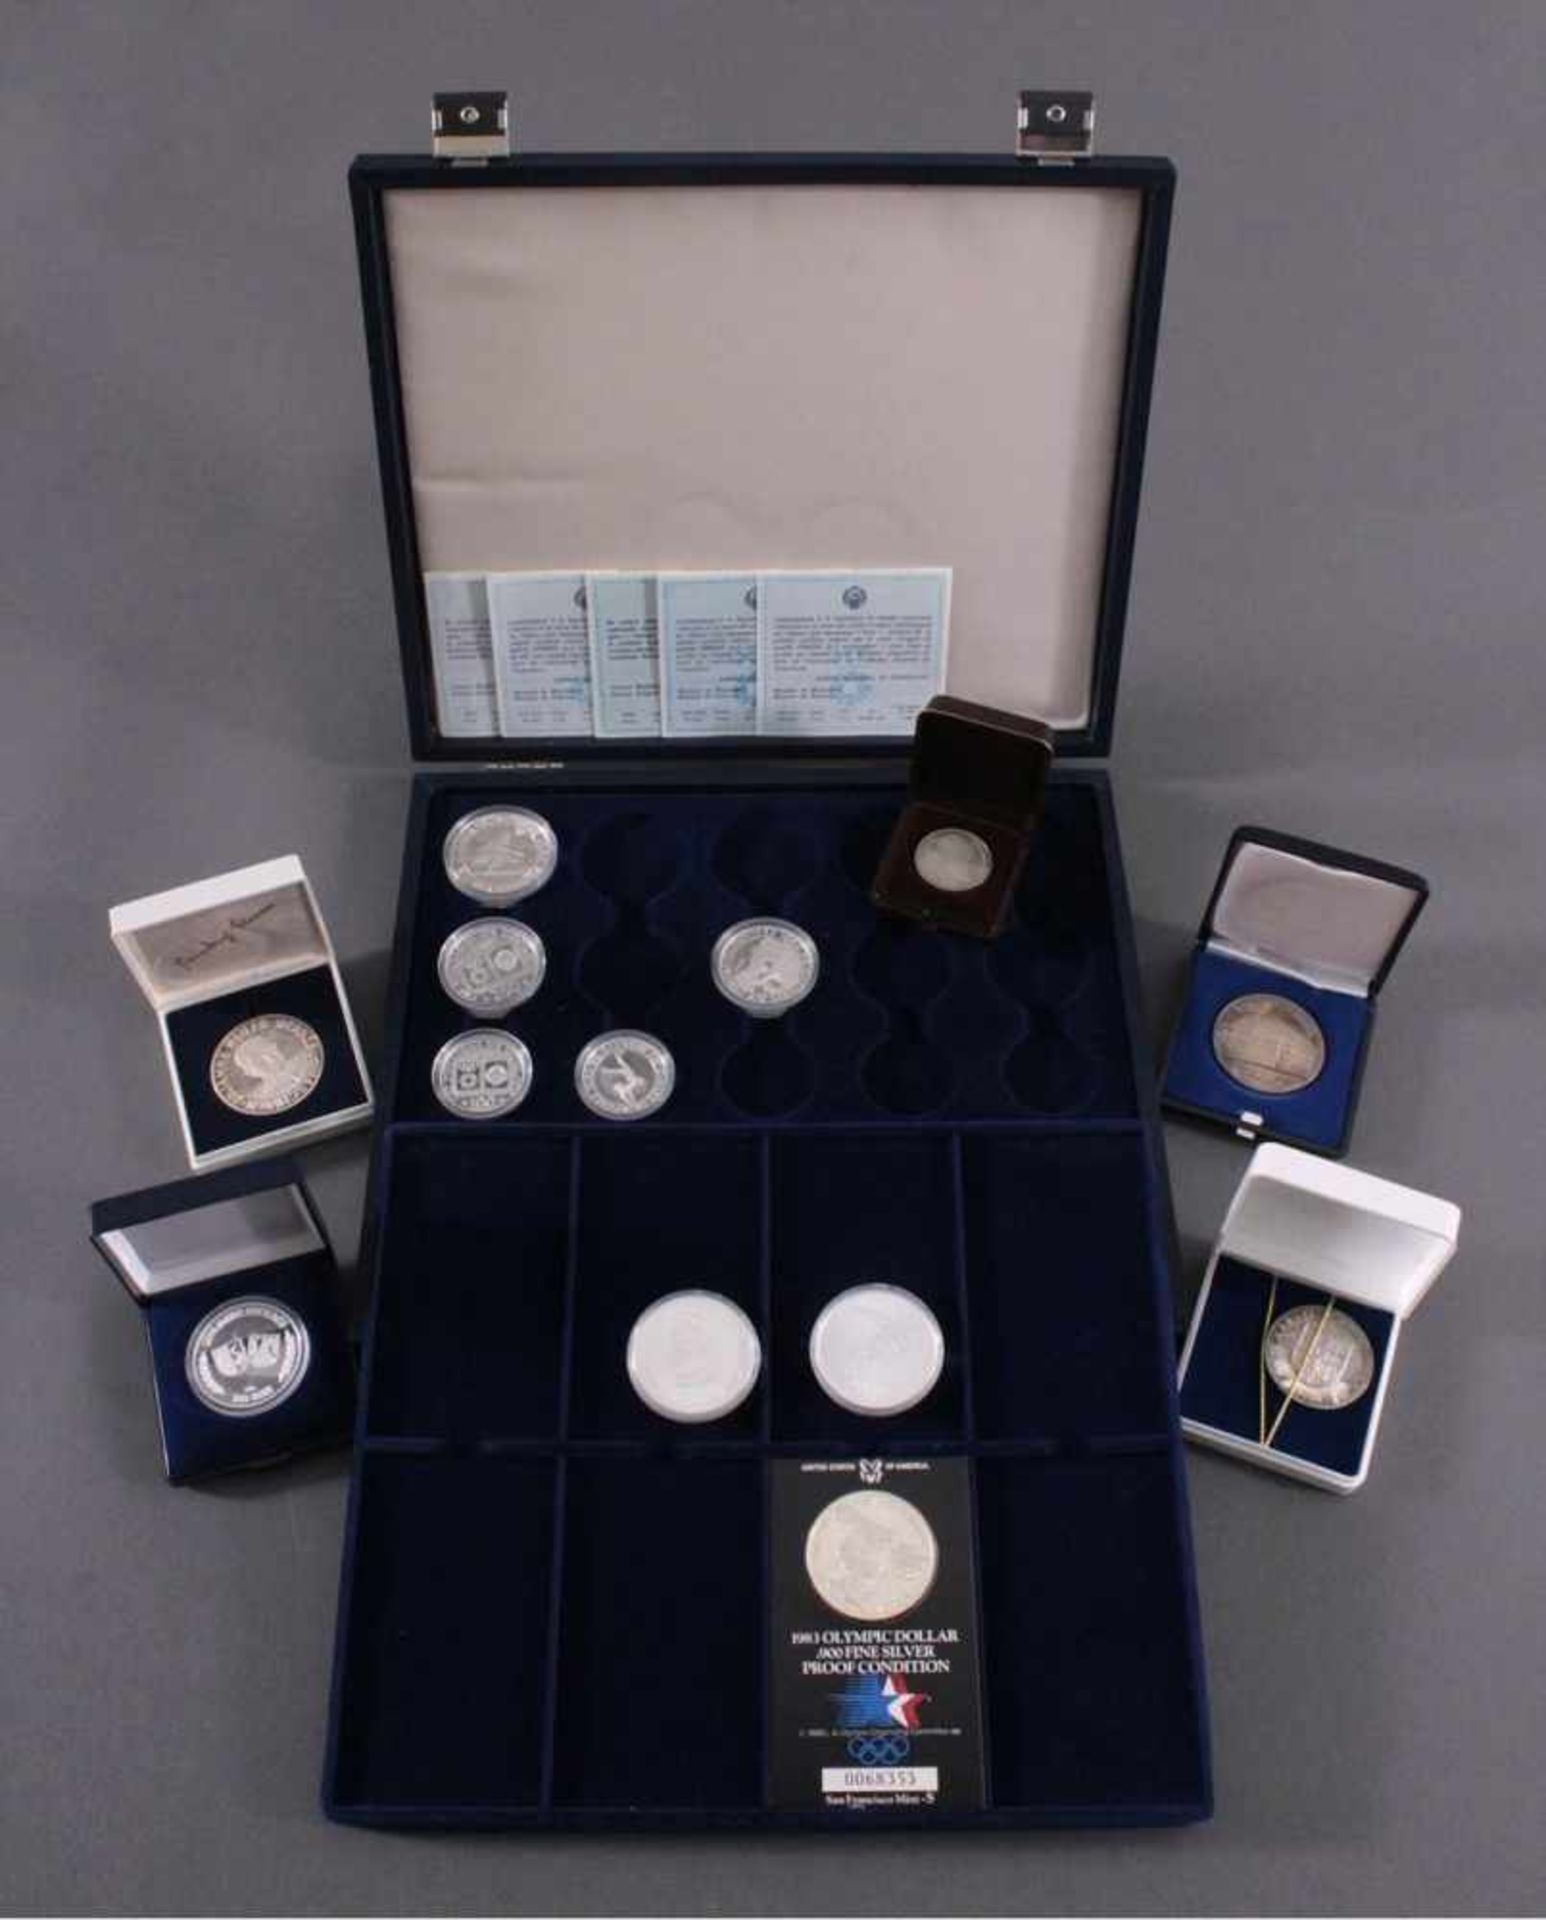 Sammlung Münzen und Medaillen5 Olympiamünzen USA mit Münzschatulle.2x 5 Canada Dollar in